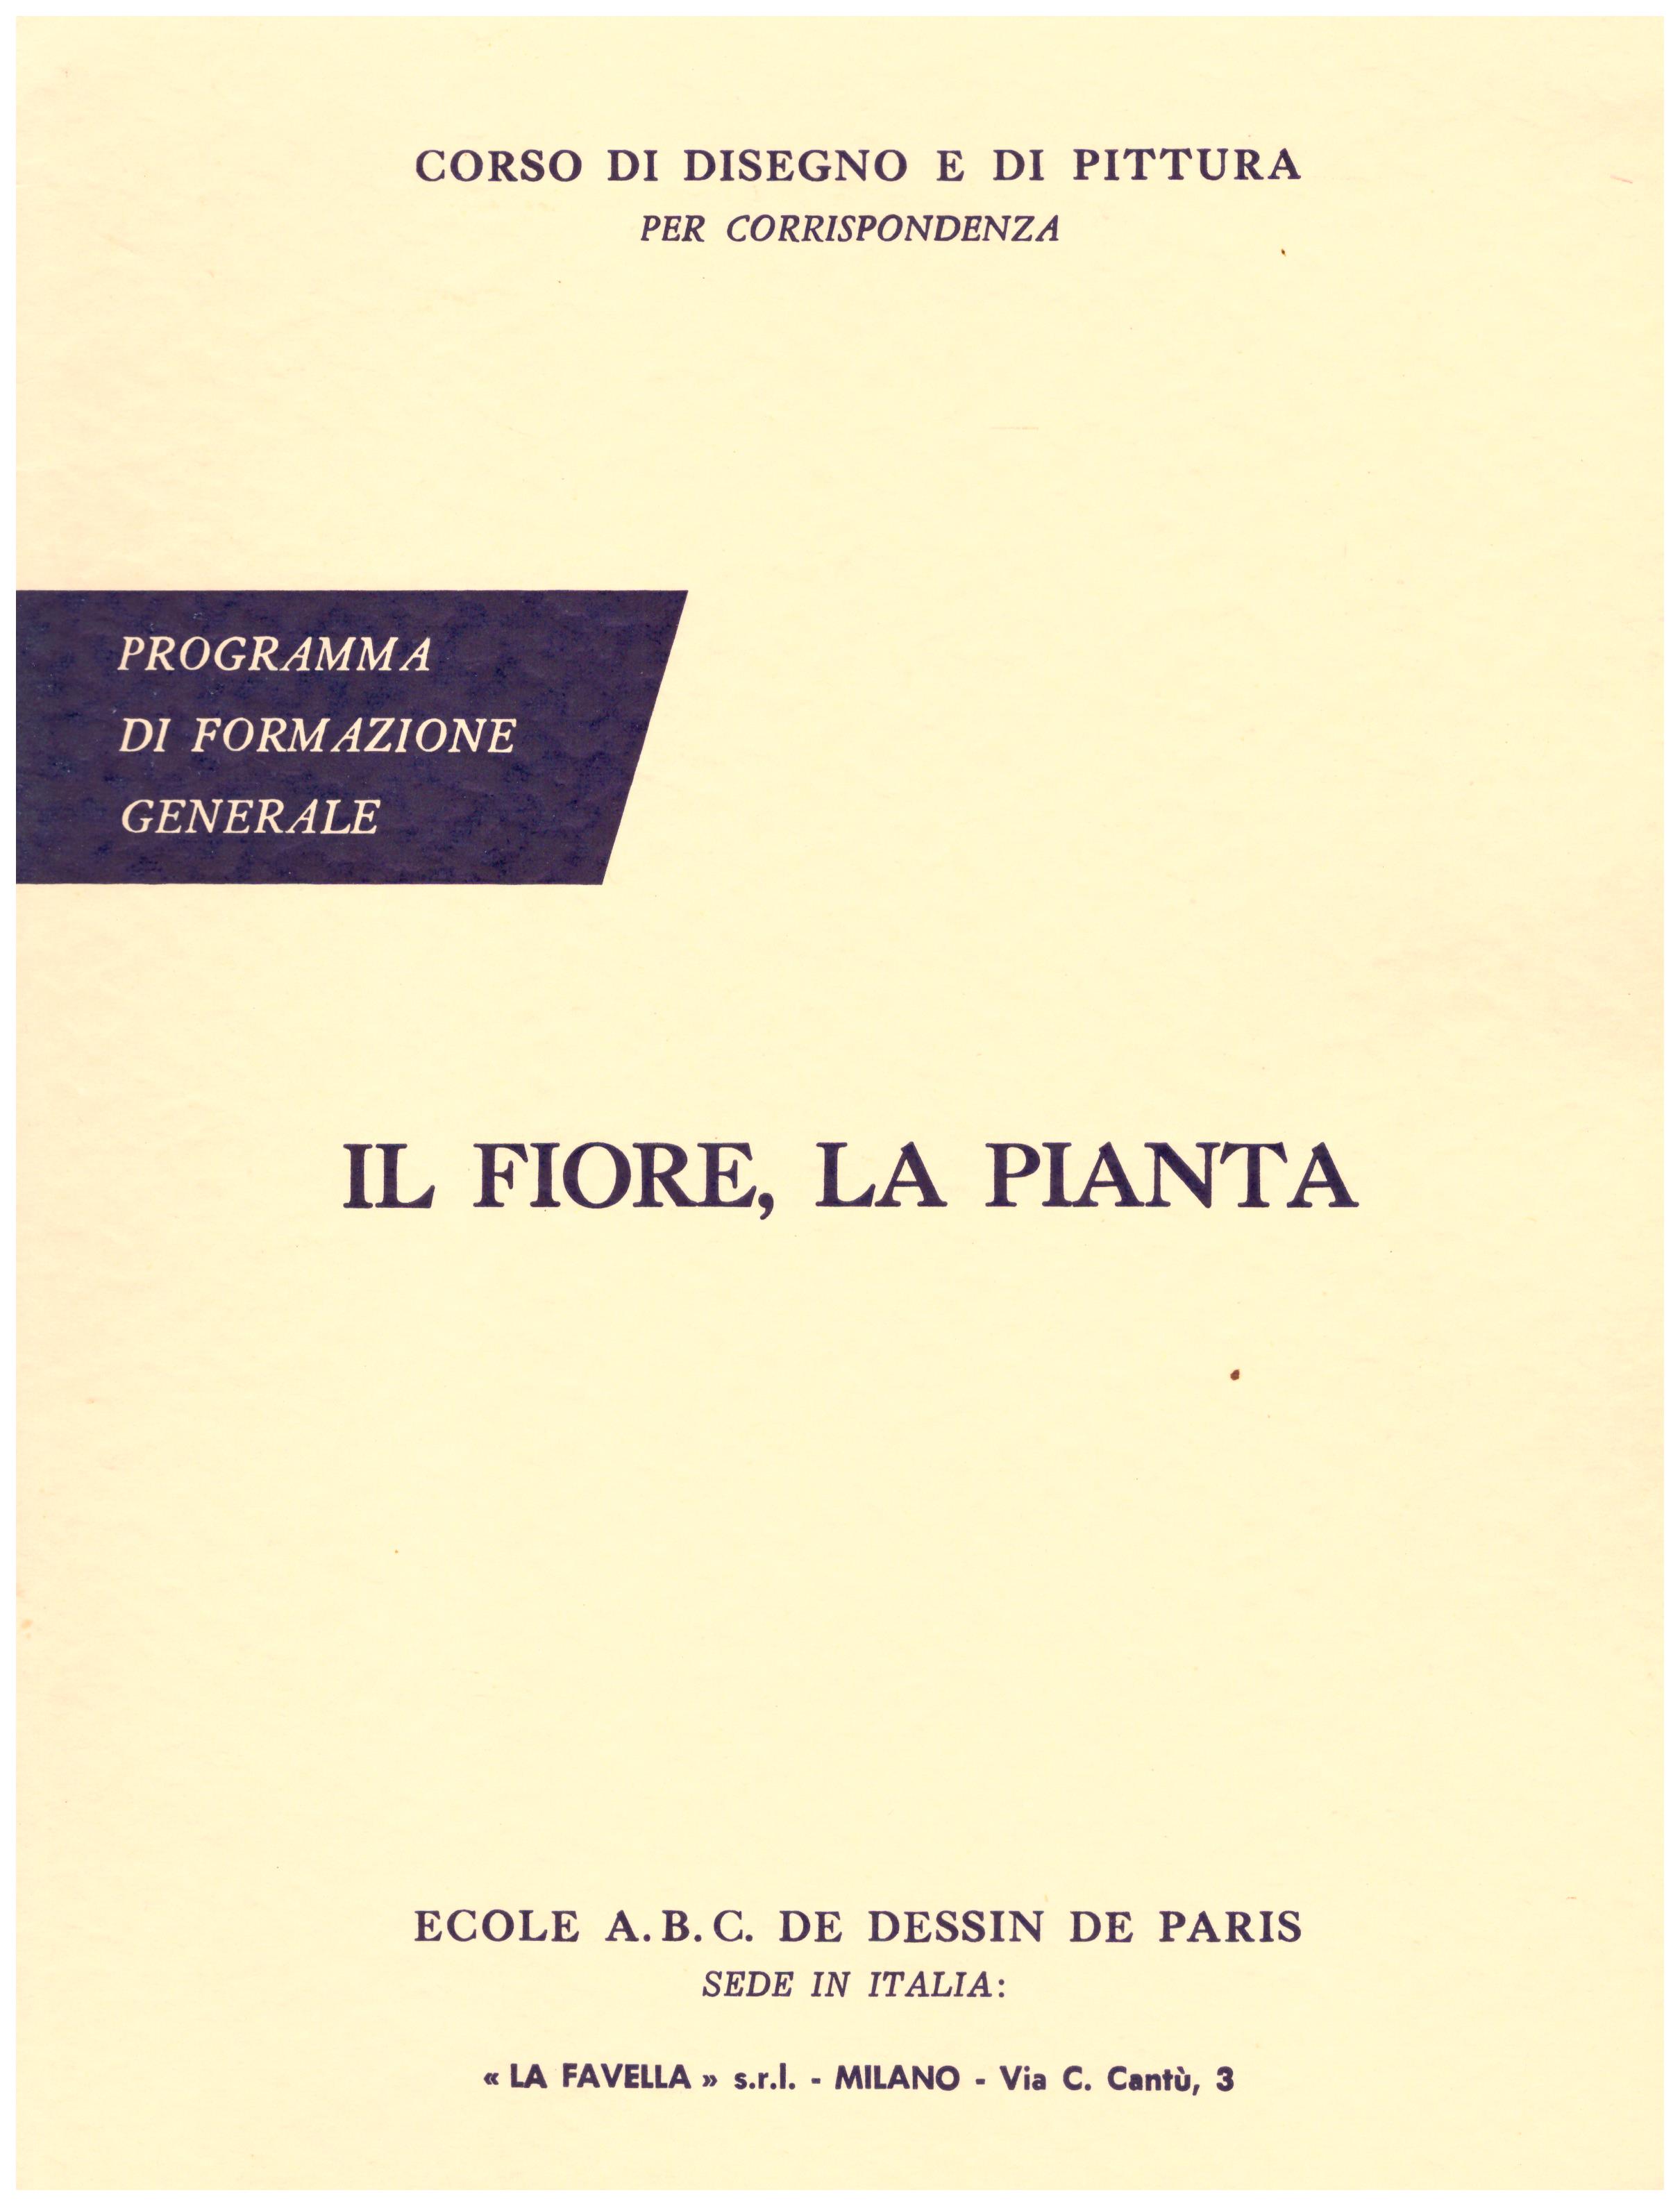 Titolo: Corso di disegno e pittura, il fiore e la pianta  Autore: AA.VV.  Editore: Ecole A.B.C. de dessin de Paris sede in Italia: La Favella, Milano 1962